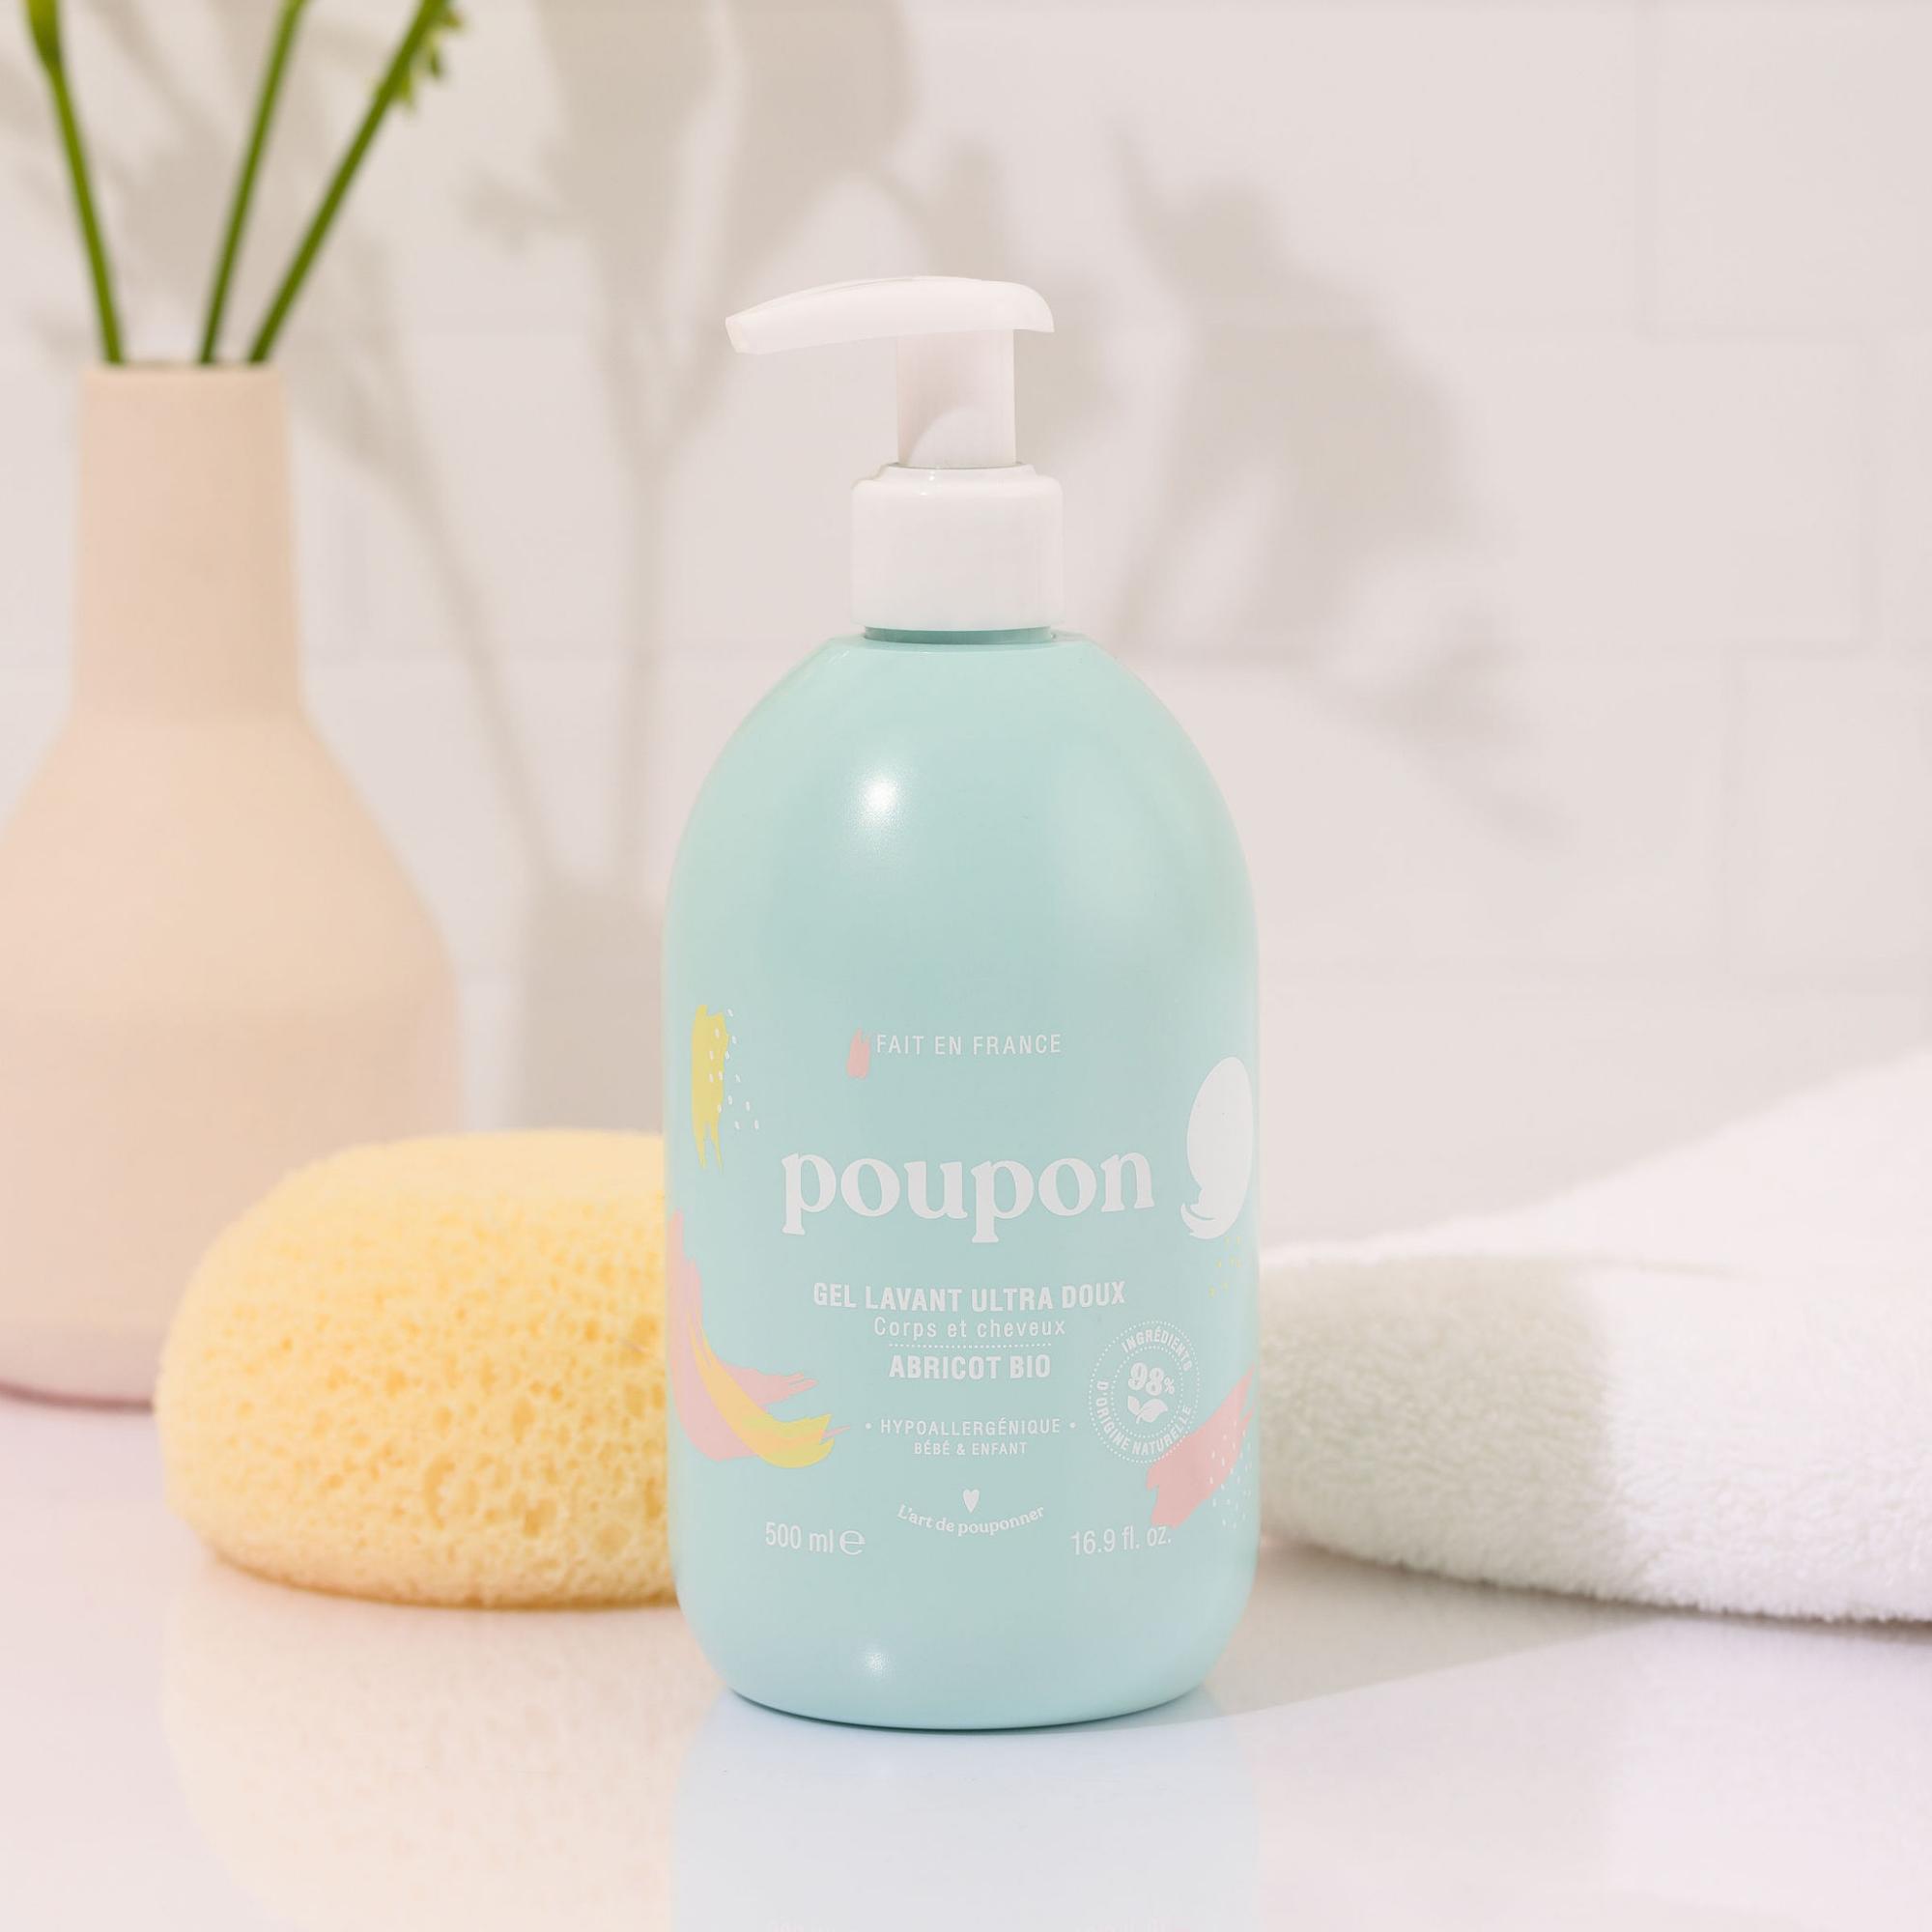 Poupon – Gel lavant corps et cheveux